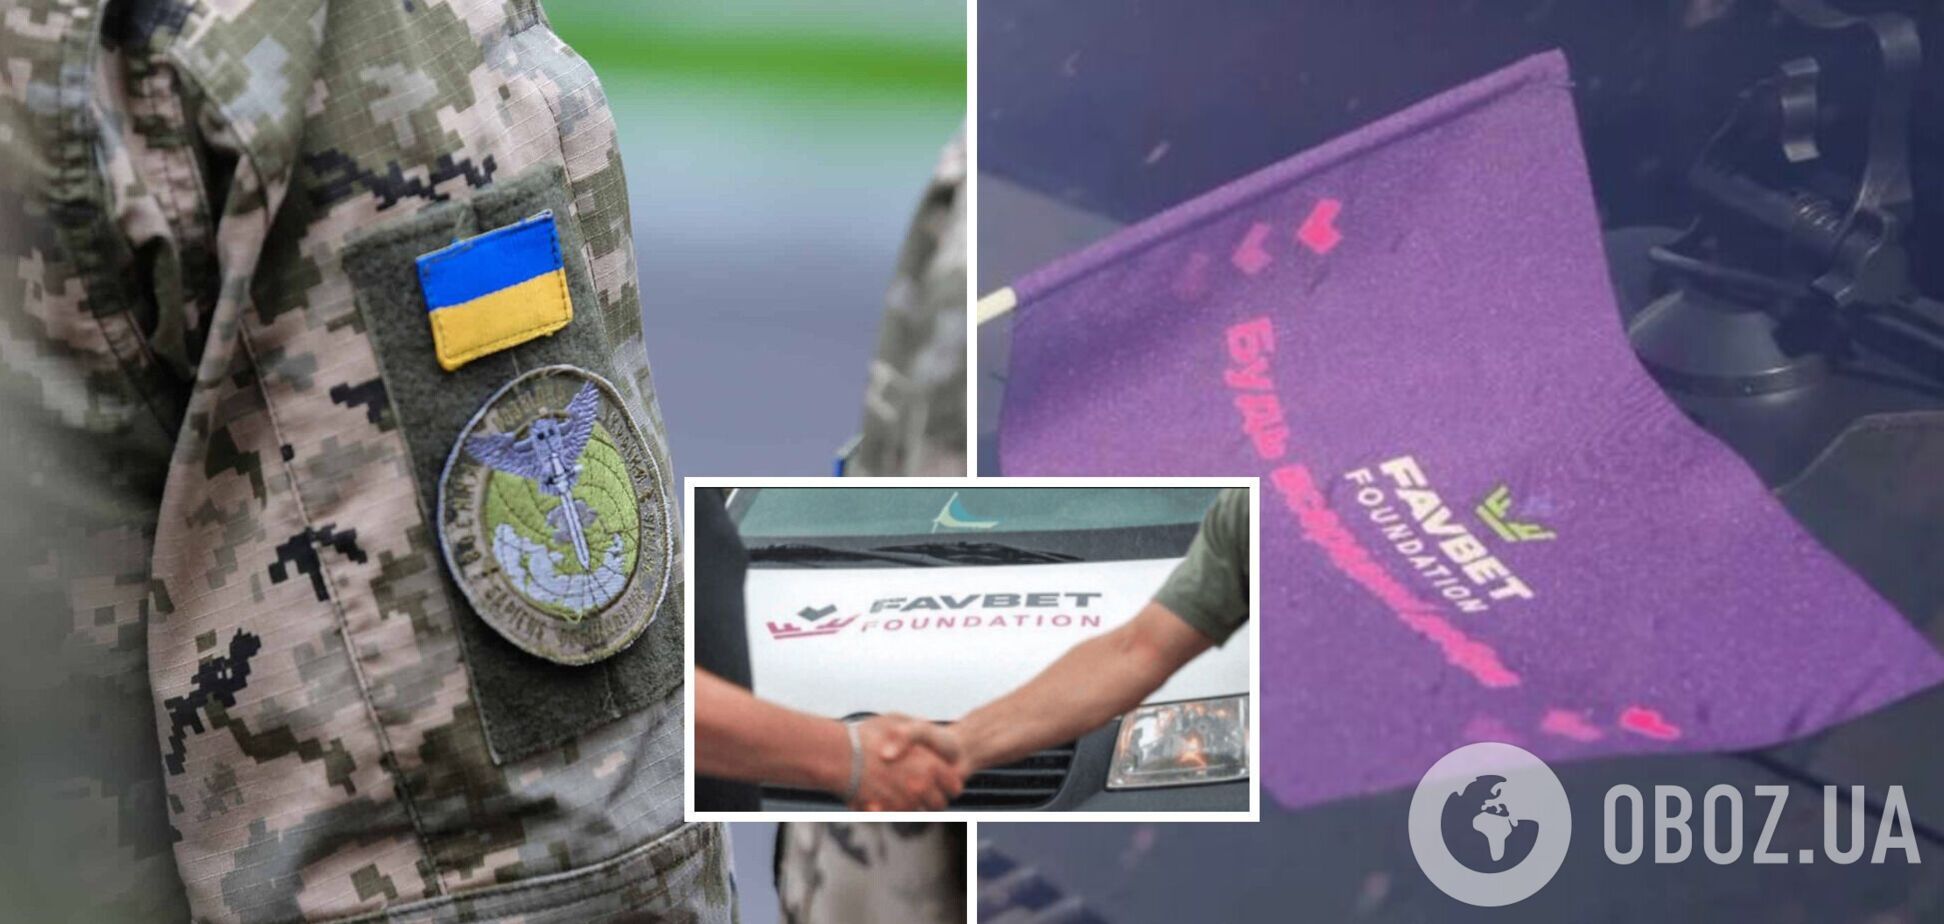 Військові розвідники ГУР отримали спецавтомобіль від Favbet Foundation